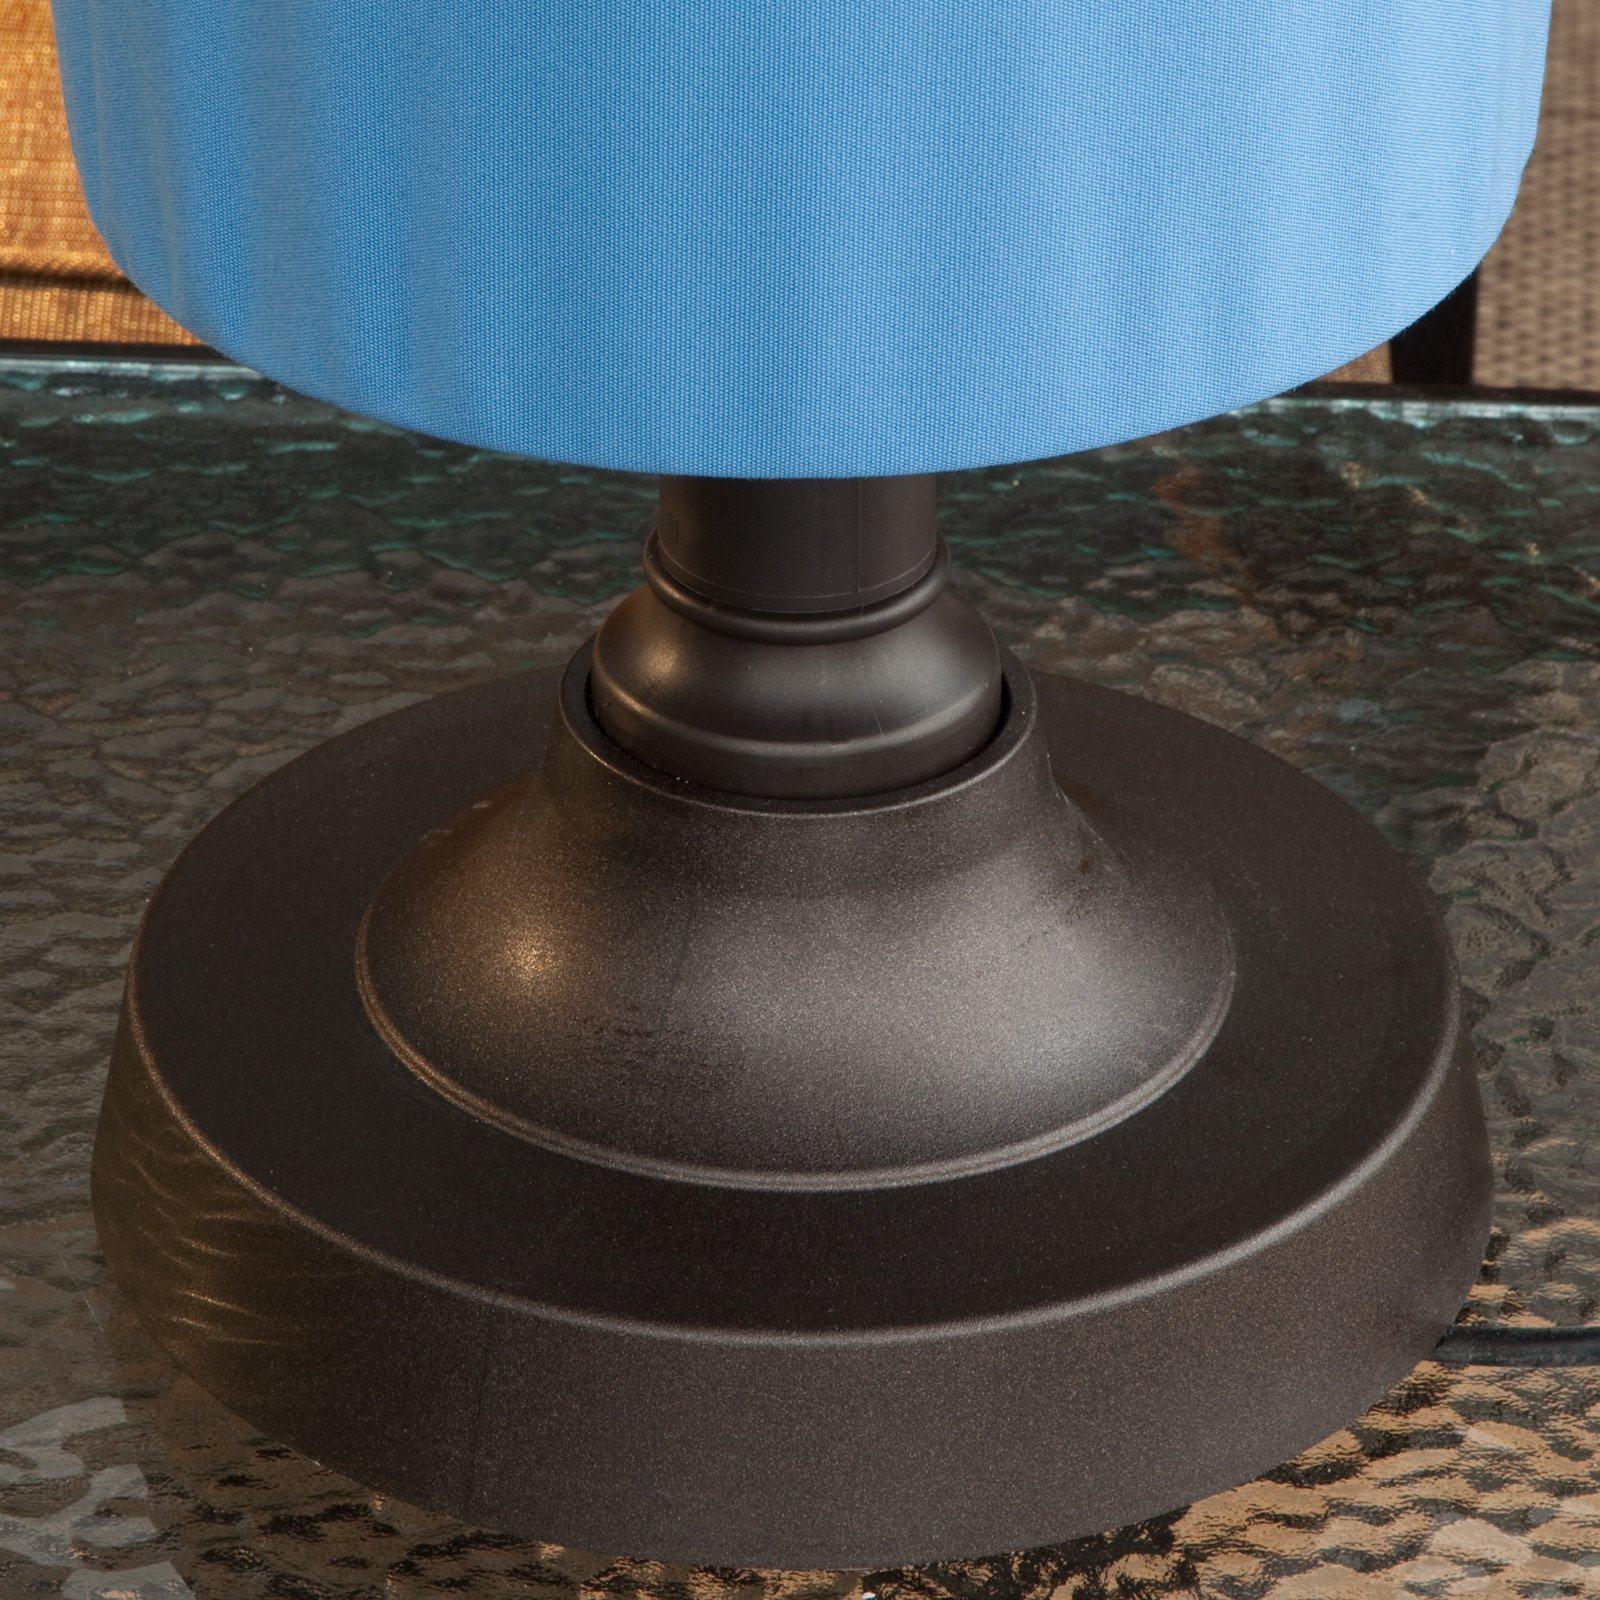 Coronado Outdoor Patio Table Lamp - image 2 of 5